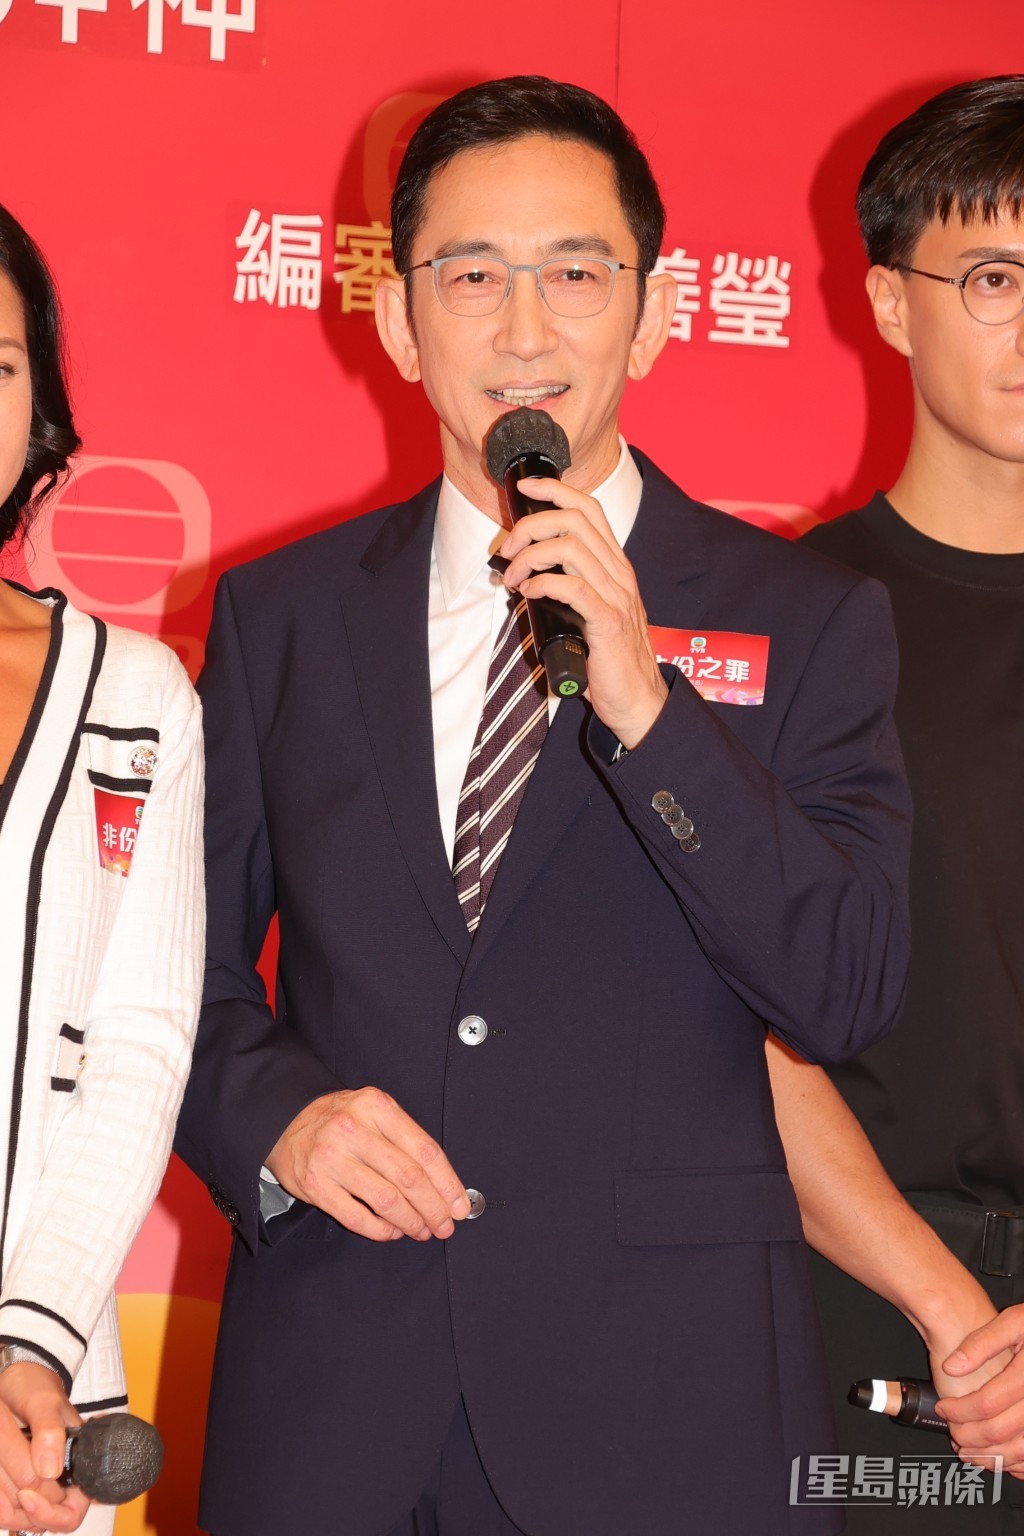 吳啟華相隔7年再返TVB拍劇。